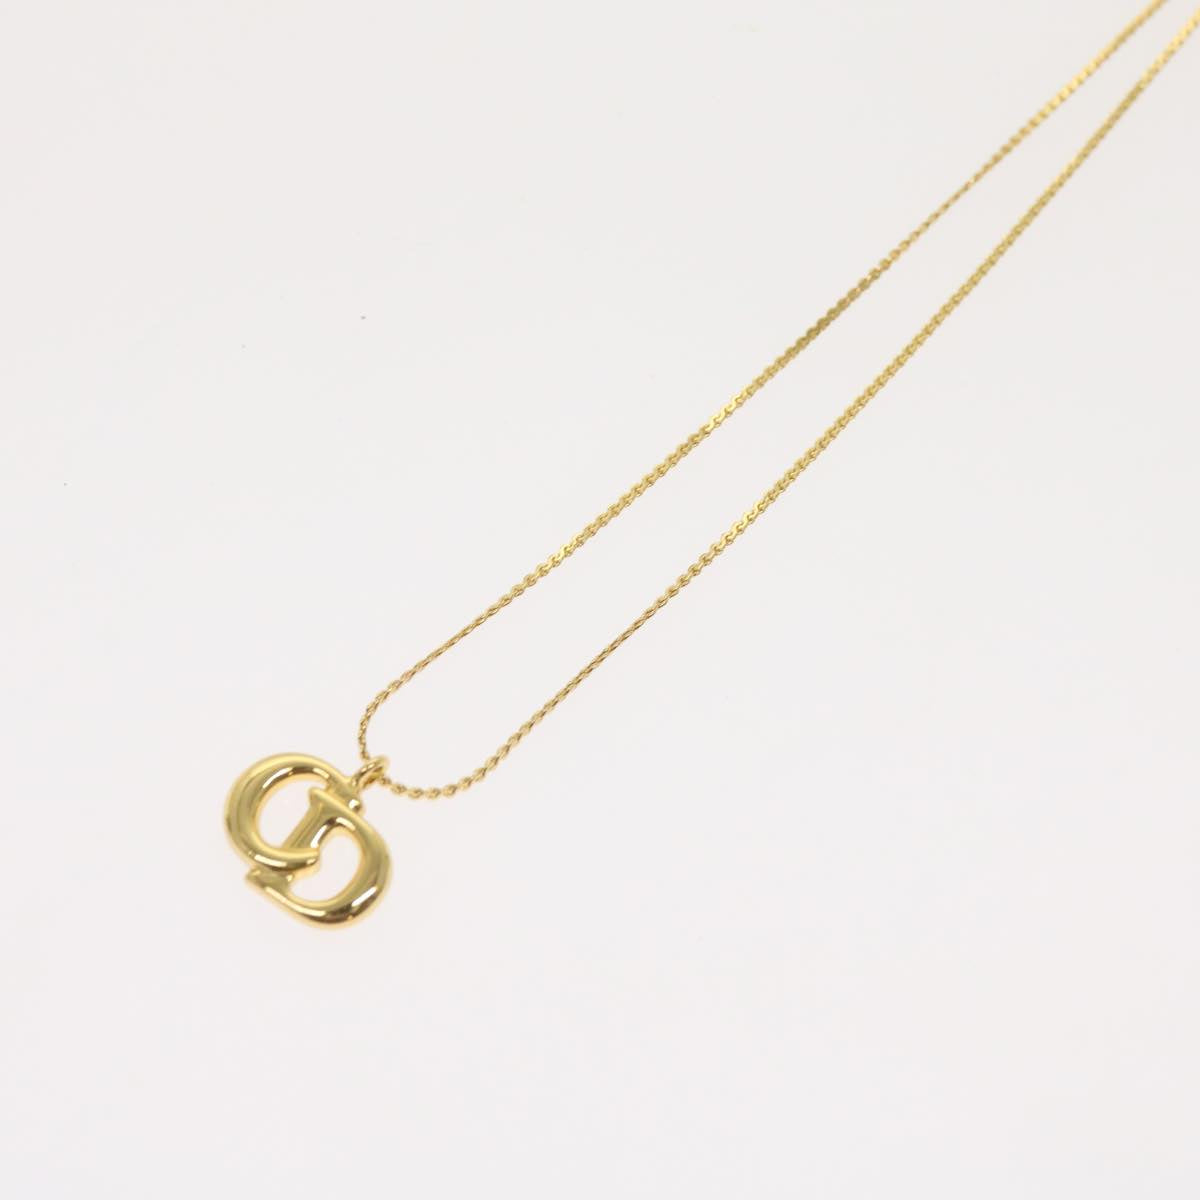 Christian Dior Bracelet Necklace 2Set Gold Auth am5729